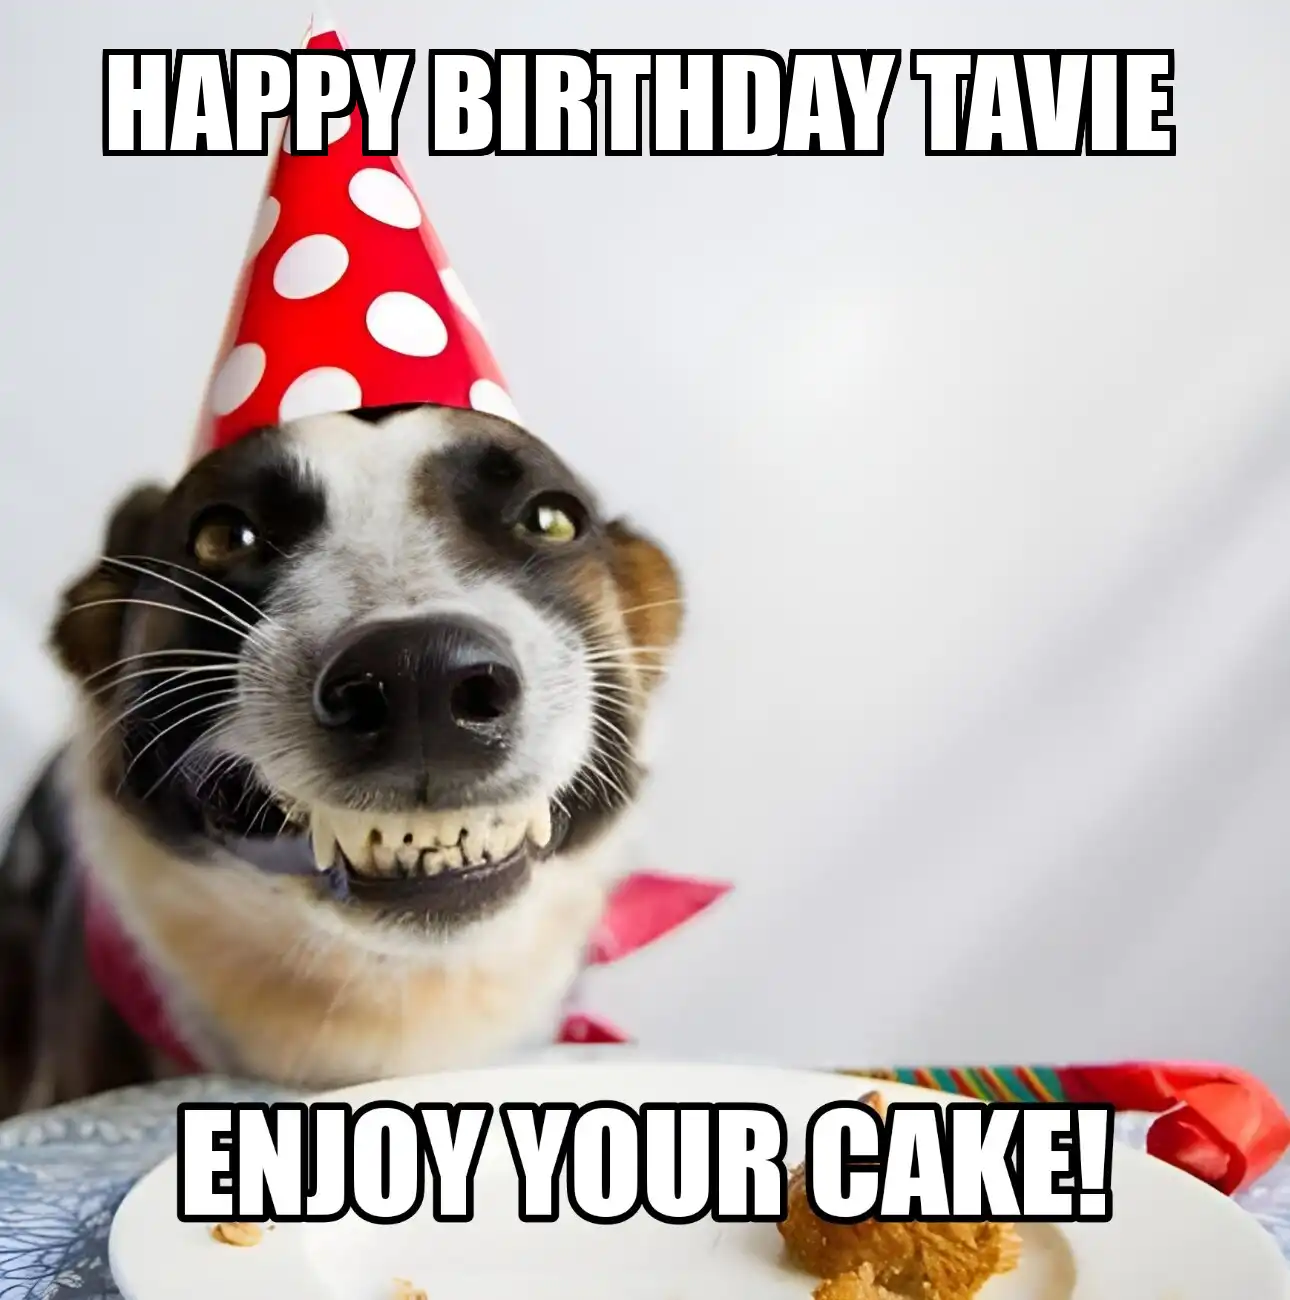 Happy Birthday Tavie Enjoy Your Cake Dog Meme